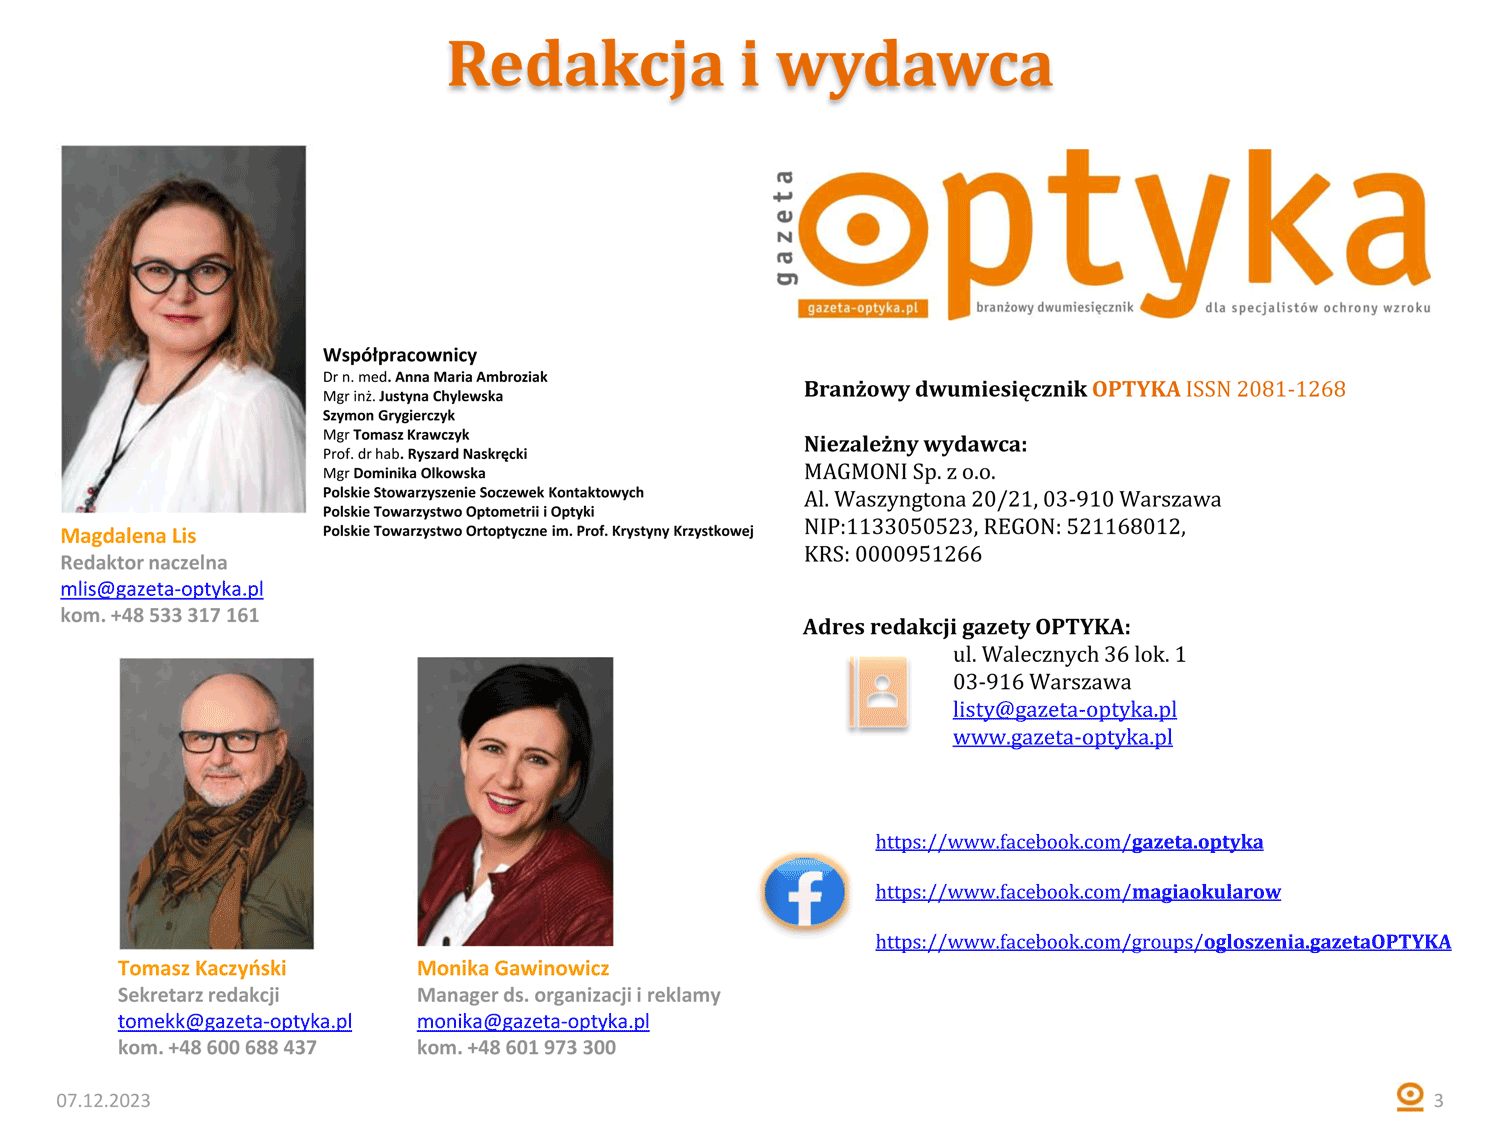 Gazeta OPTYKA MediaKit OK 3